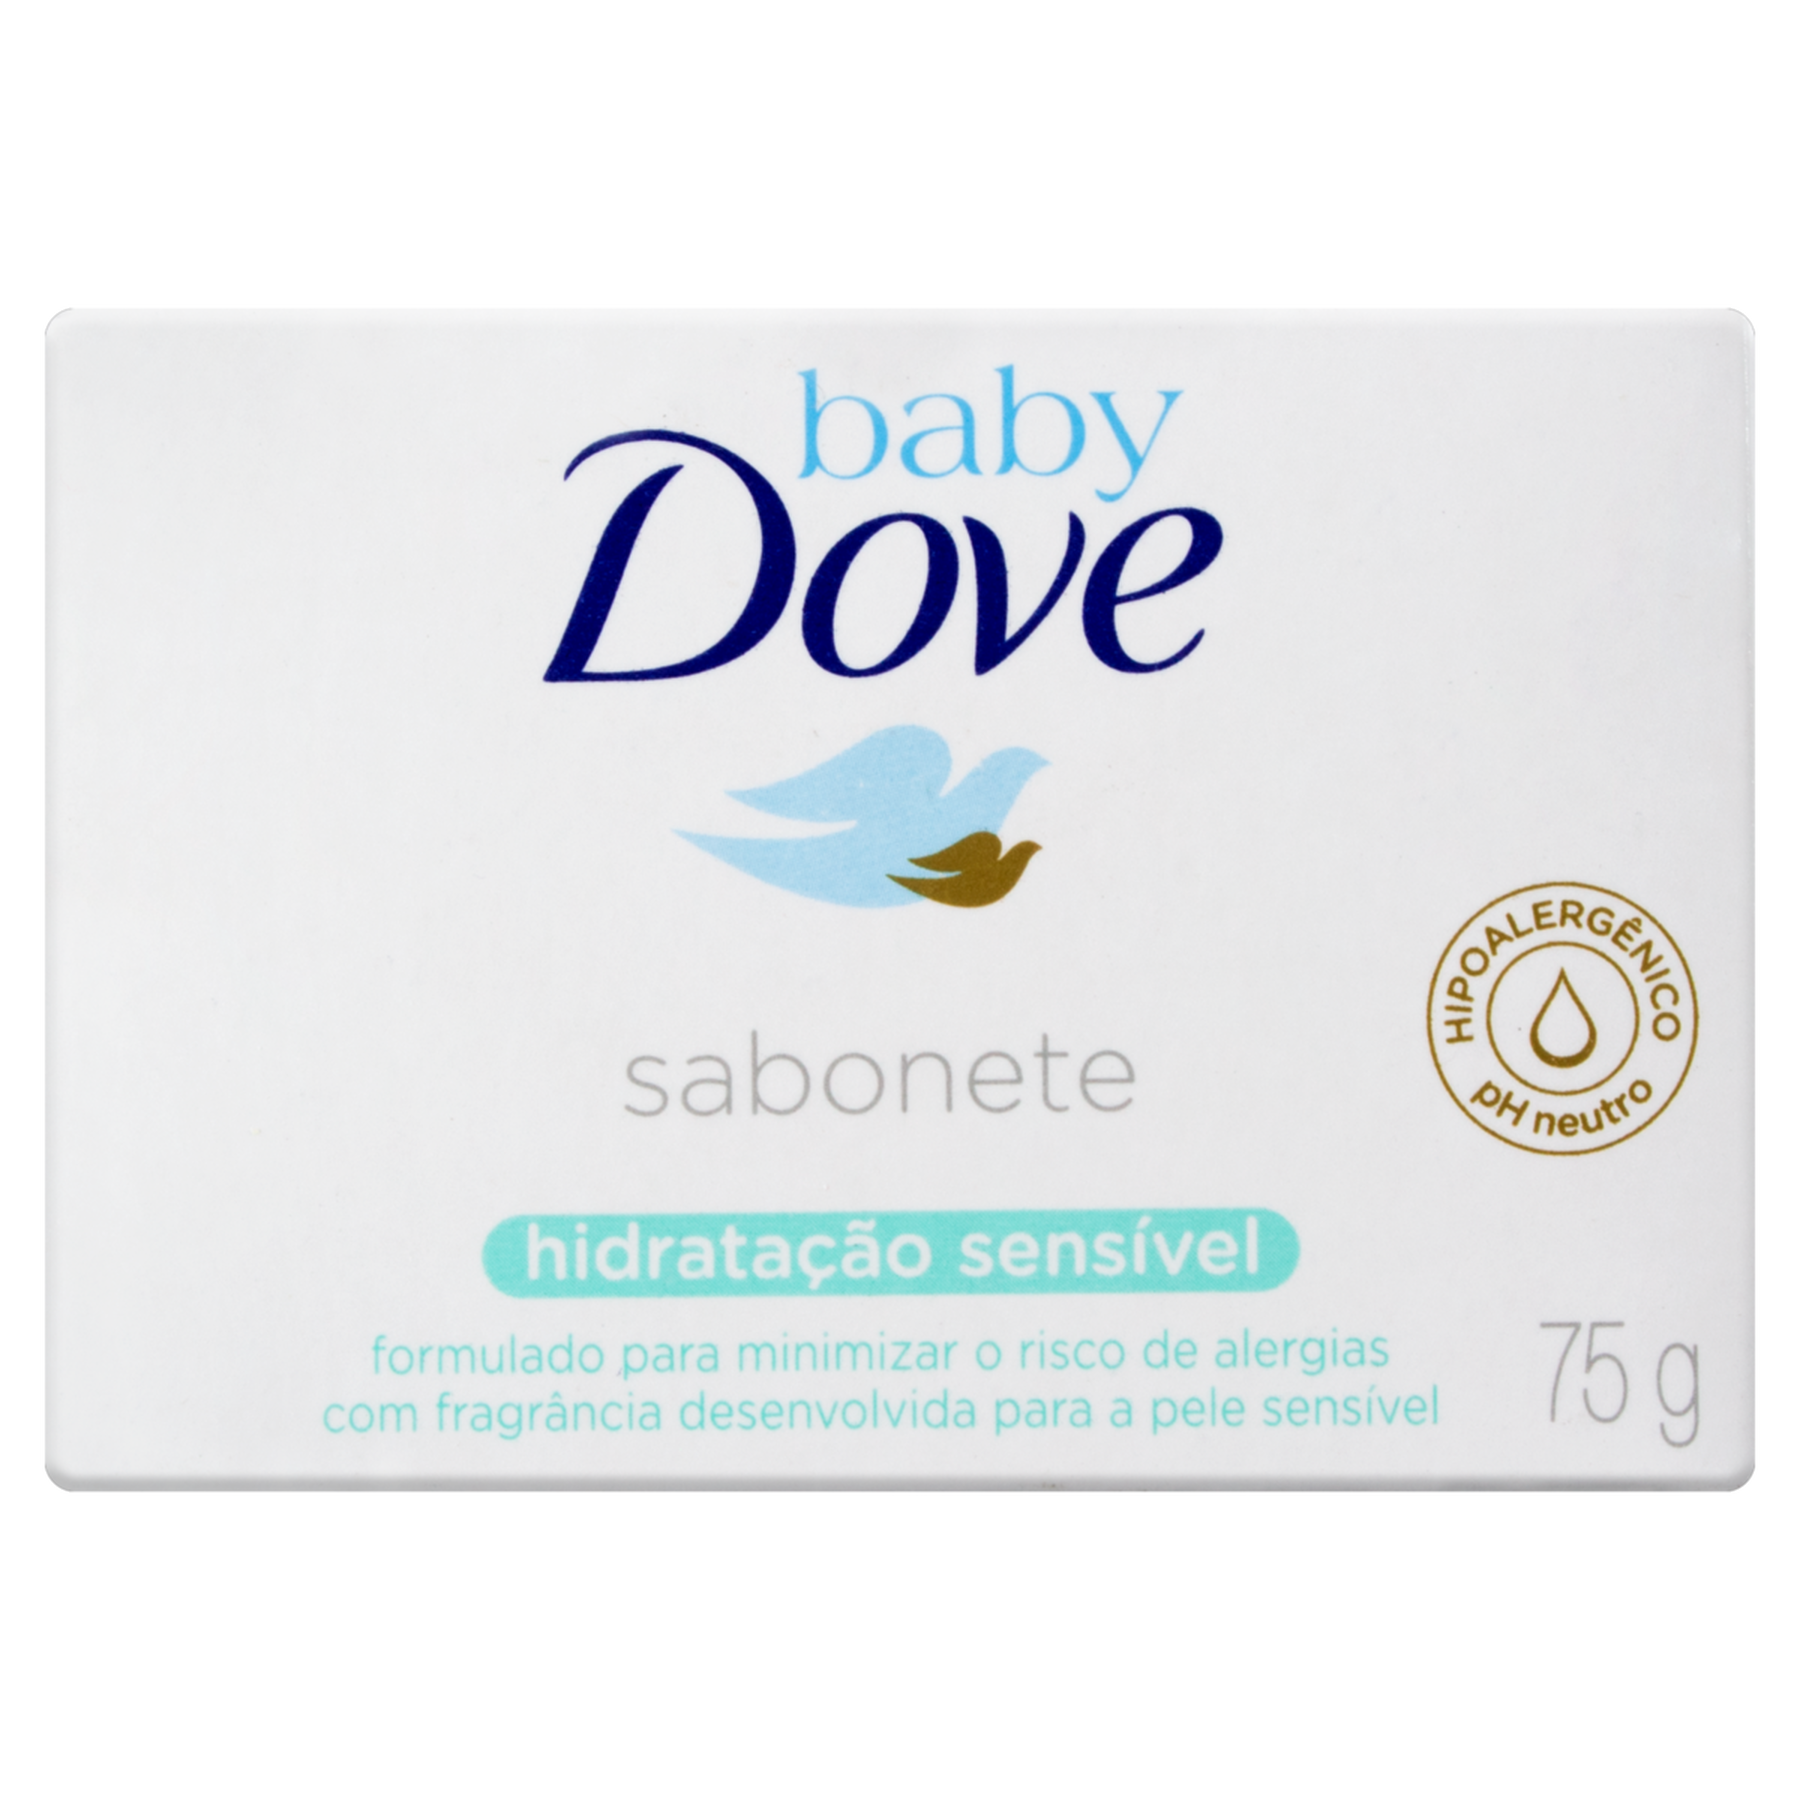 Sabonete em Barra Hidratação Sensível Dove Baby Caixa 75g